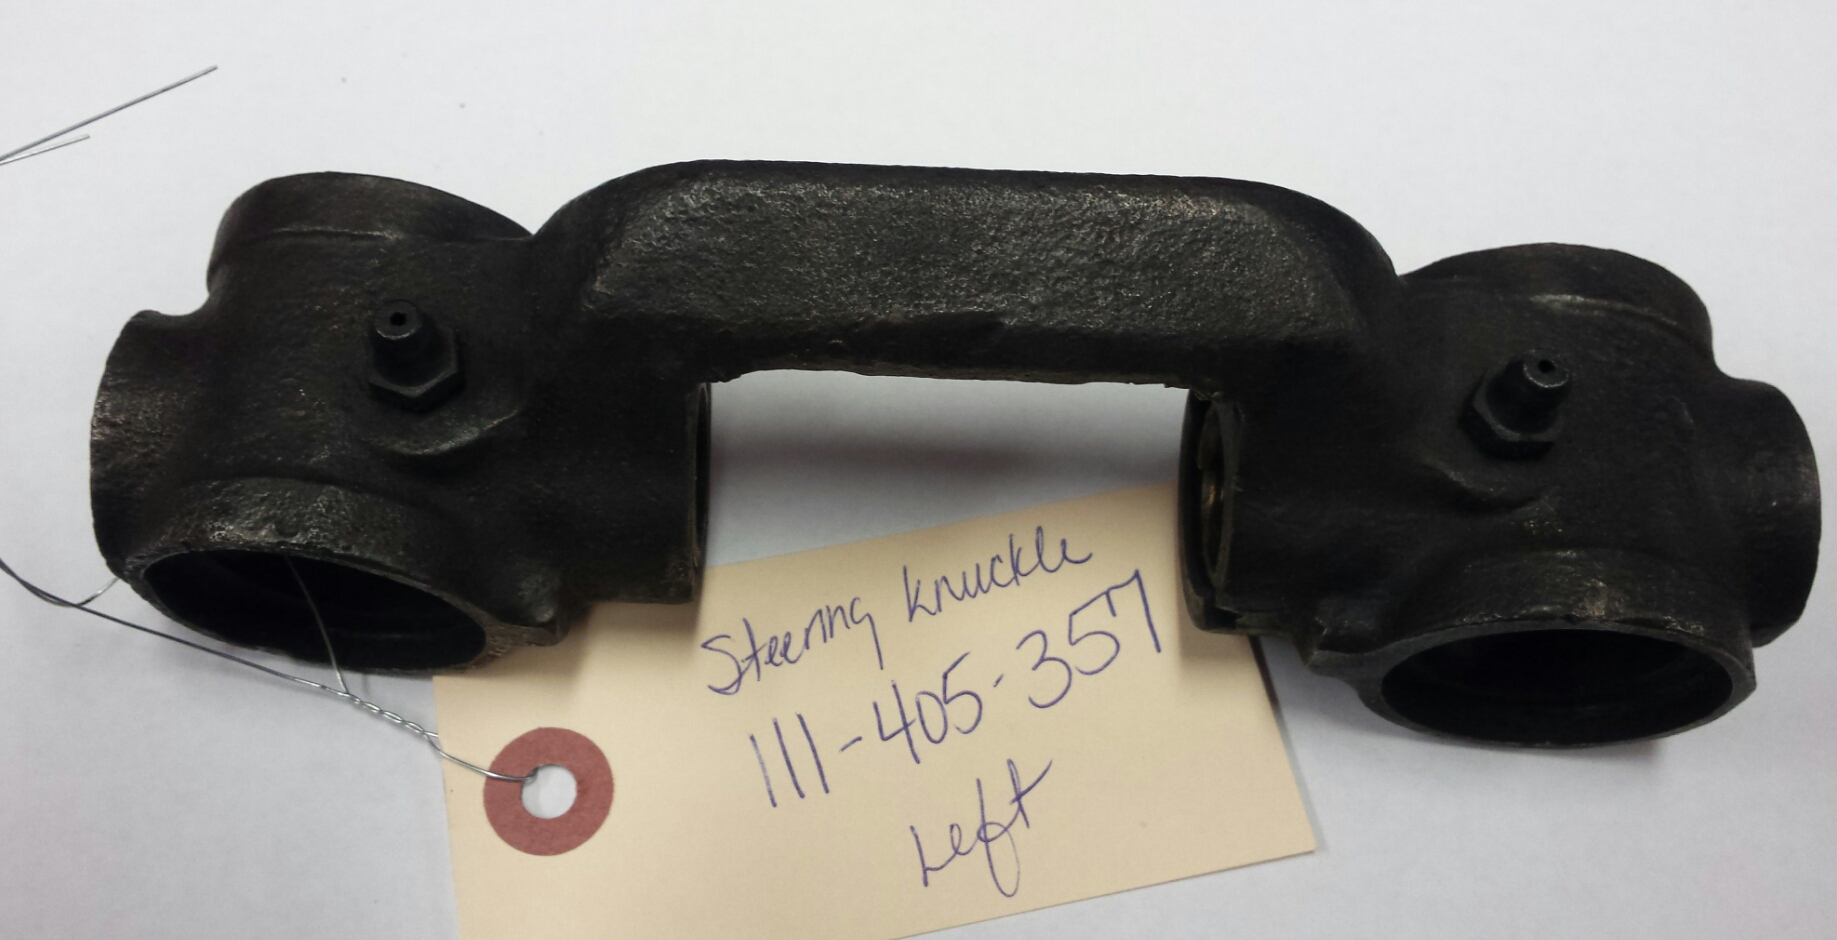 111-405-357 Left Steering Knuckle, USED